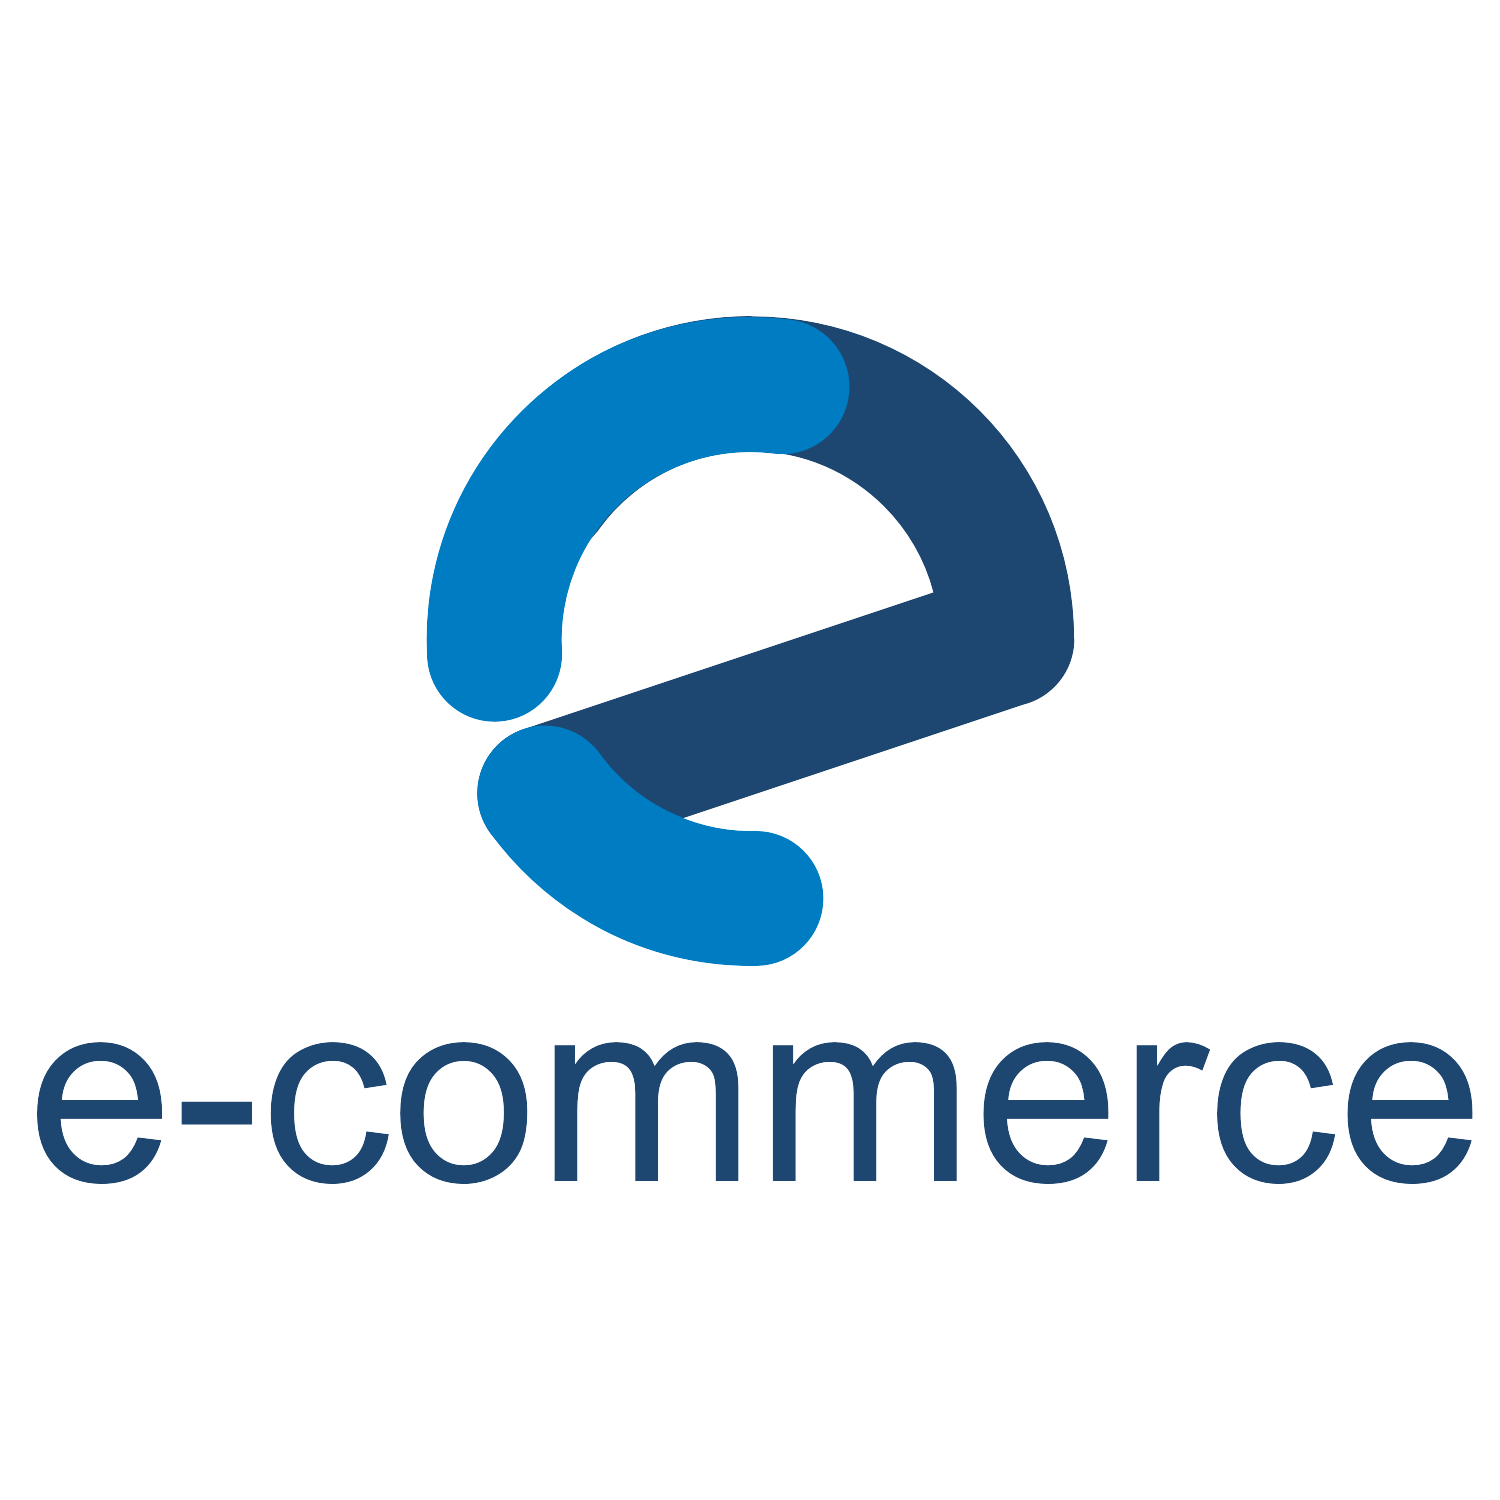 Commerce Logo - Vector for free use: E-Commerce logo